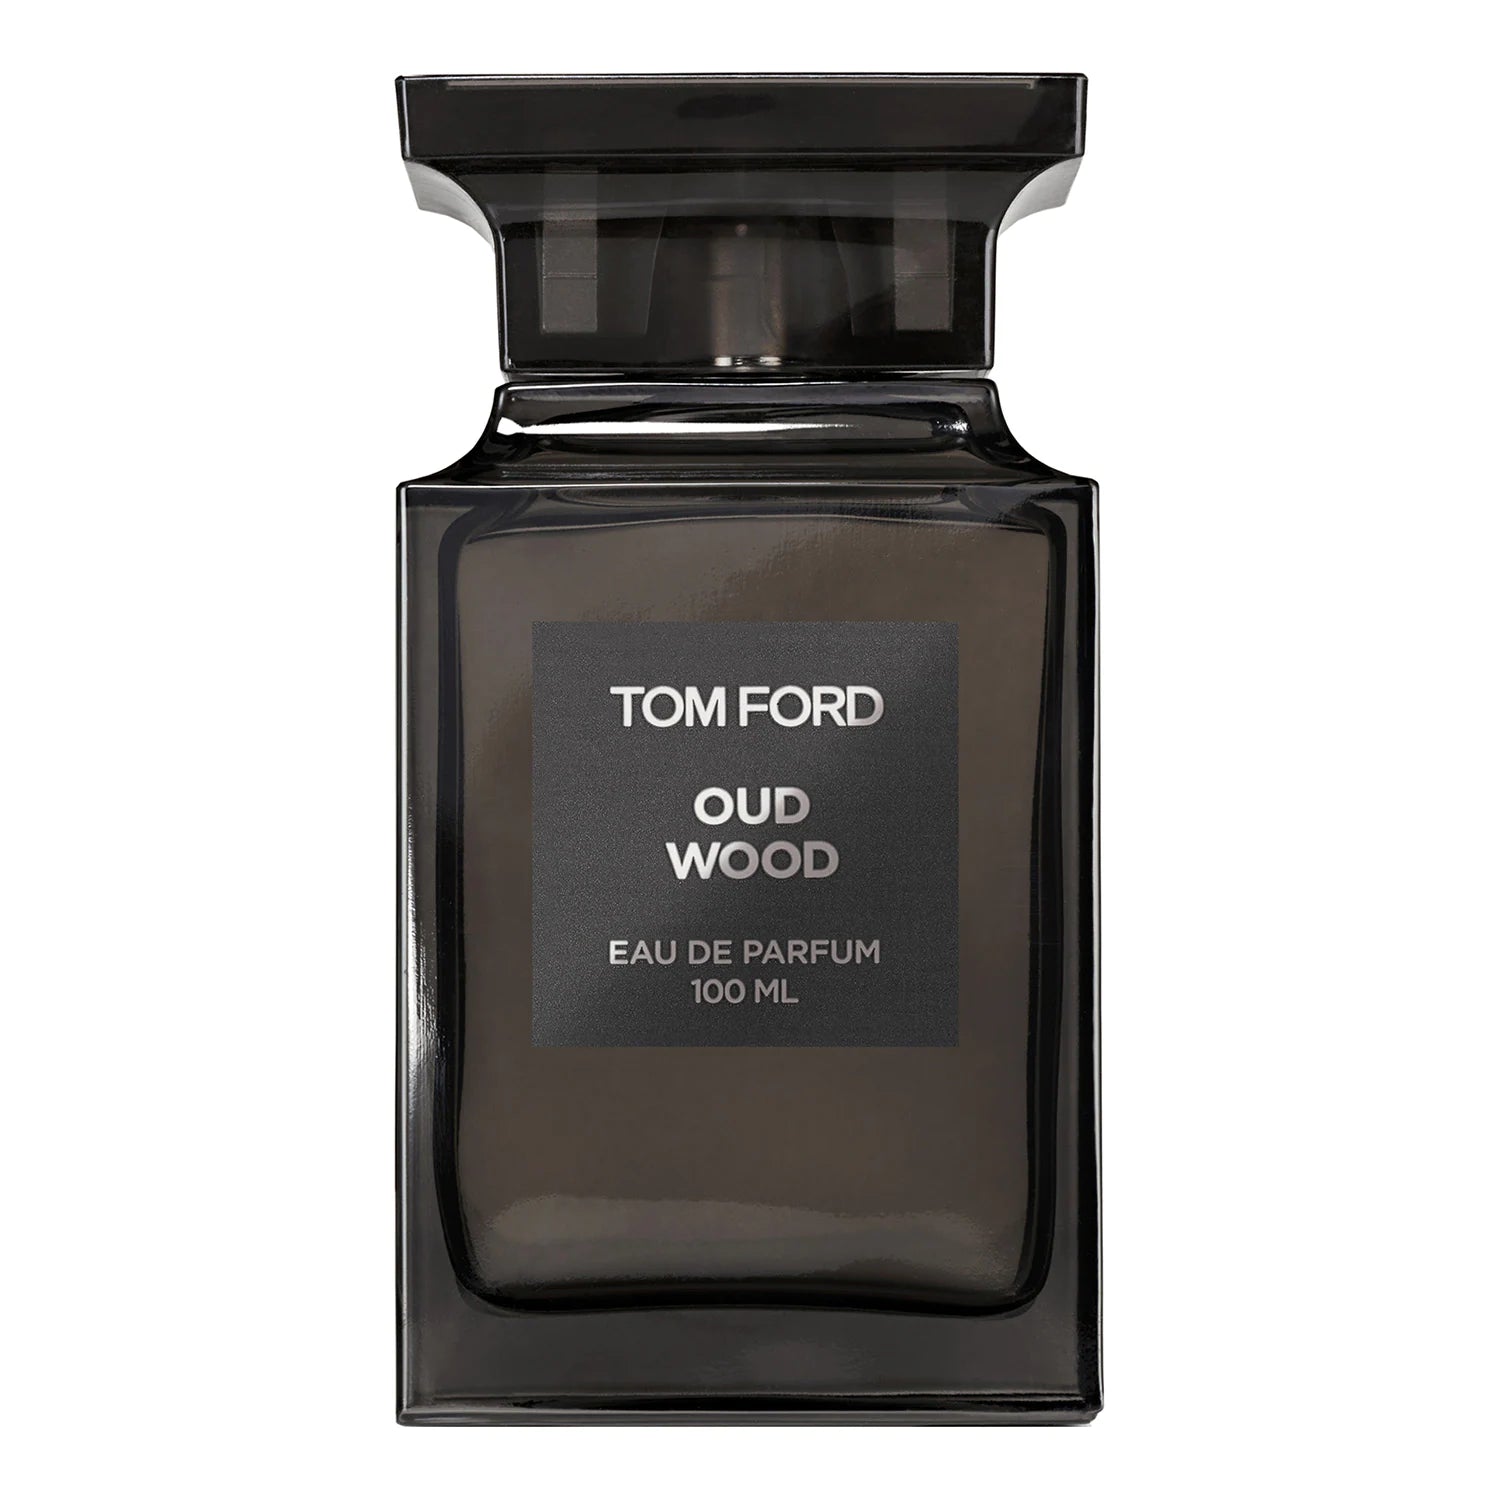 Oud Wood - Eau de Parfum